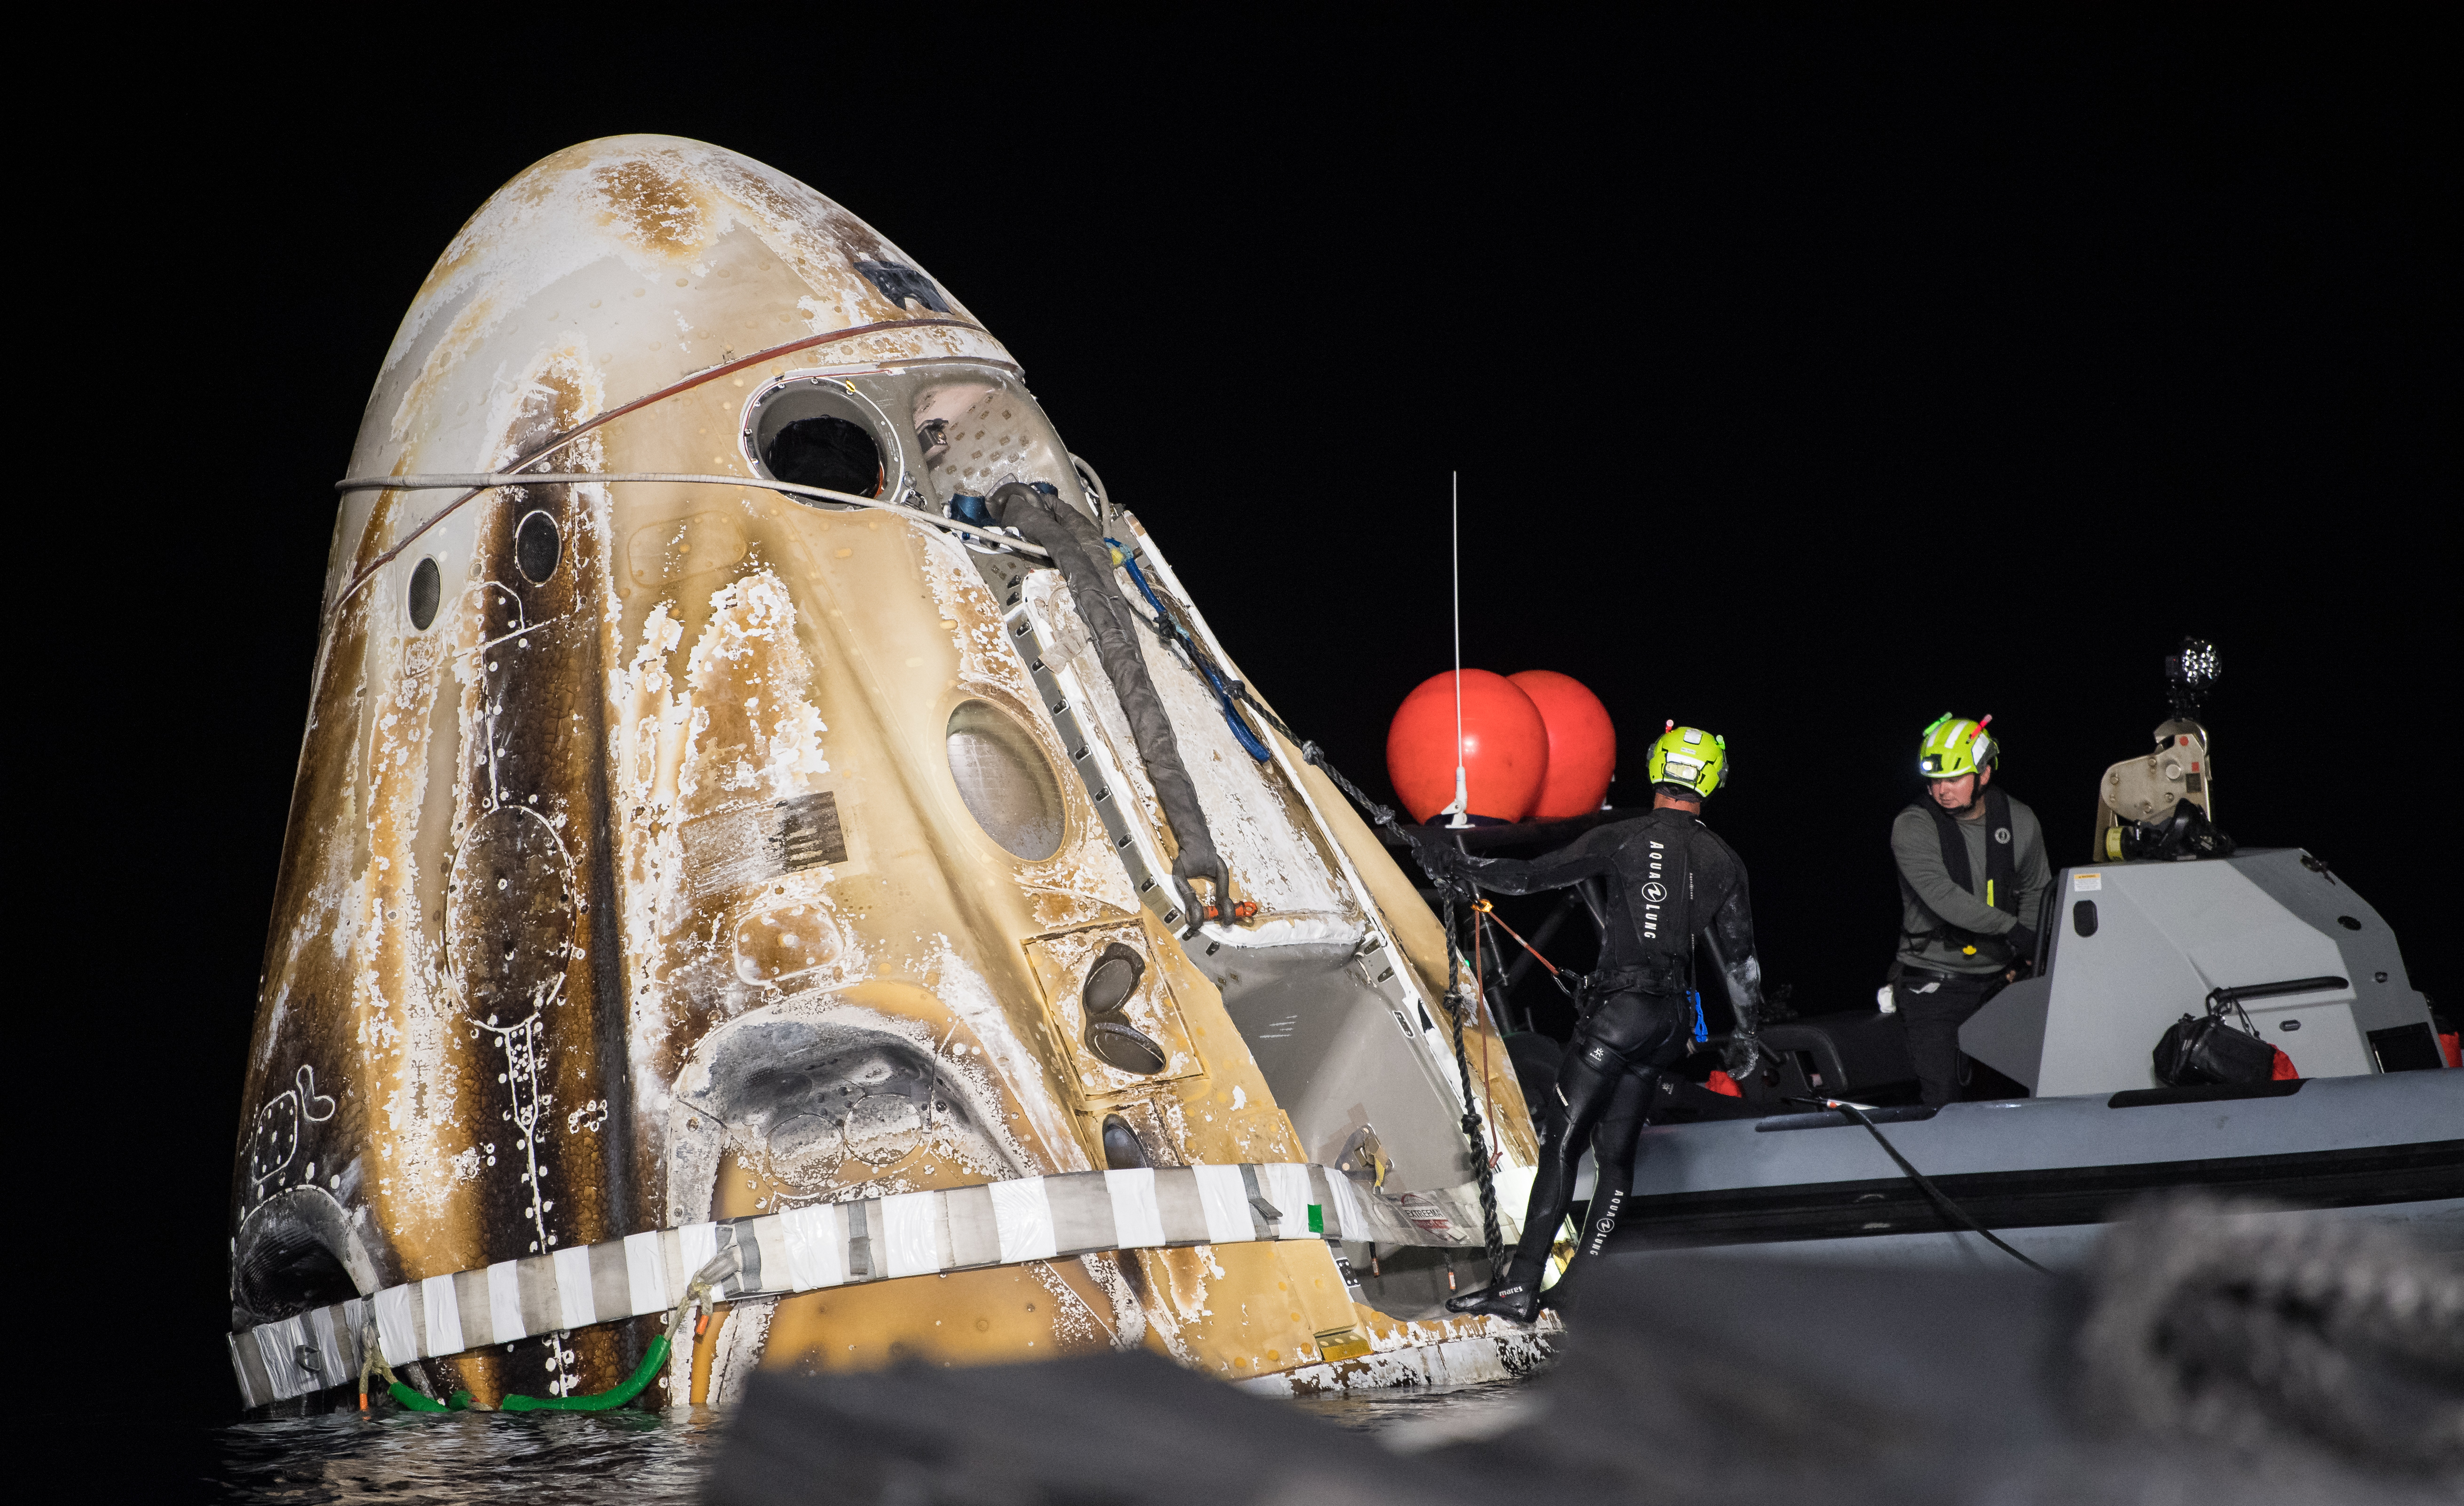 Dragon 2 Endurance po wodowaniu kończącym misję Crew-3 (Źródło: NASA/Aubrey Gemignani)